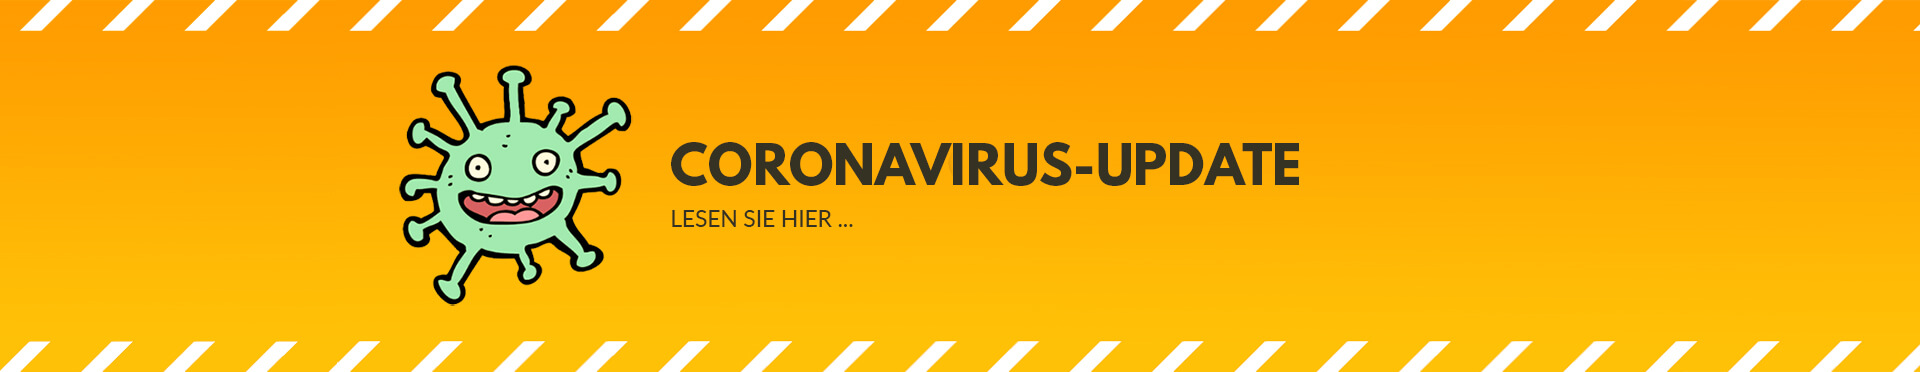 Update zu Buchungen & Stornierungen im Zusammenhang mit dem Corona-Virus